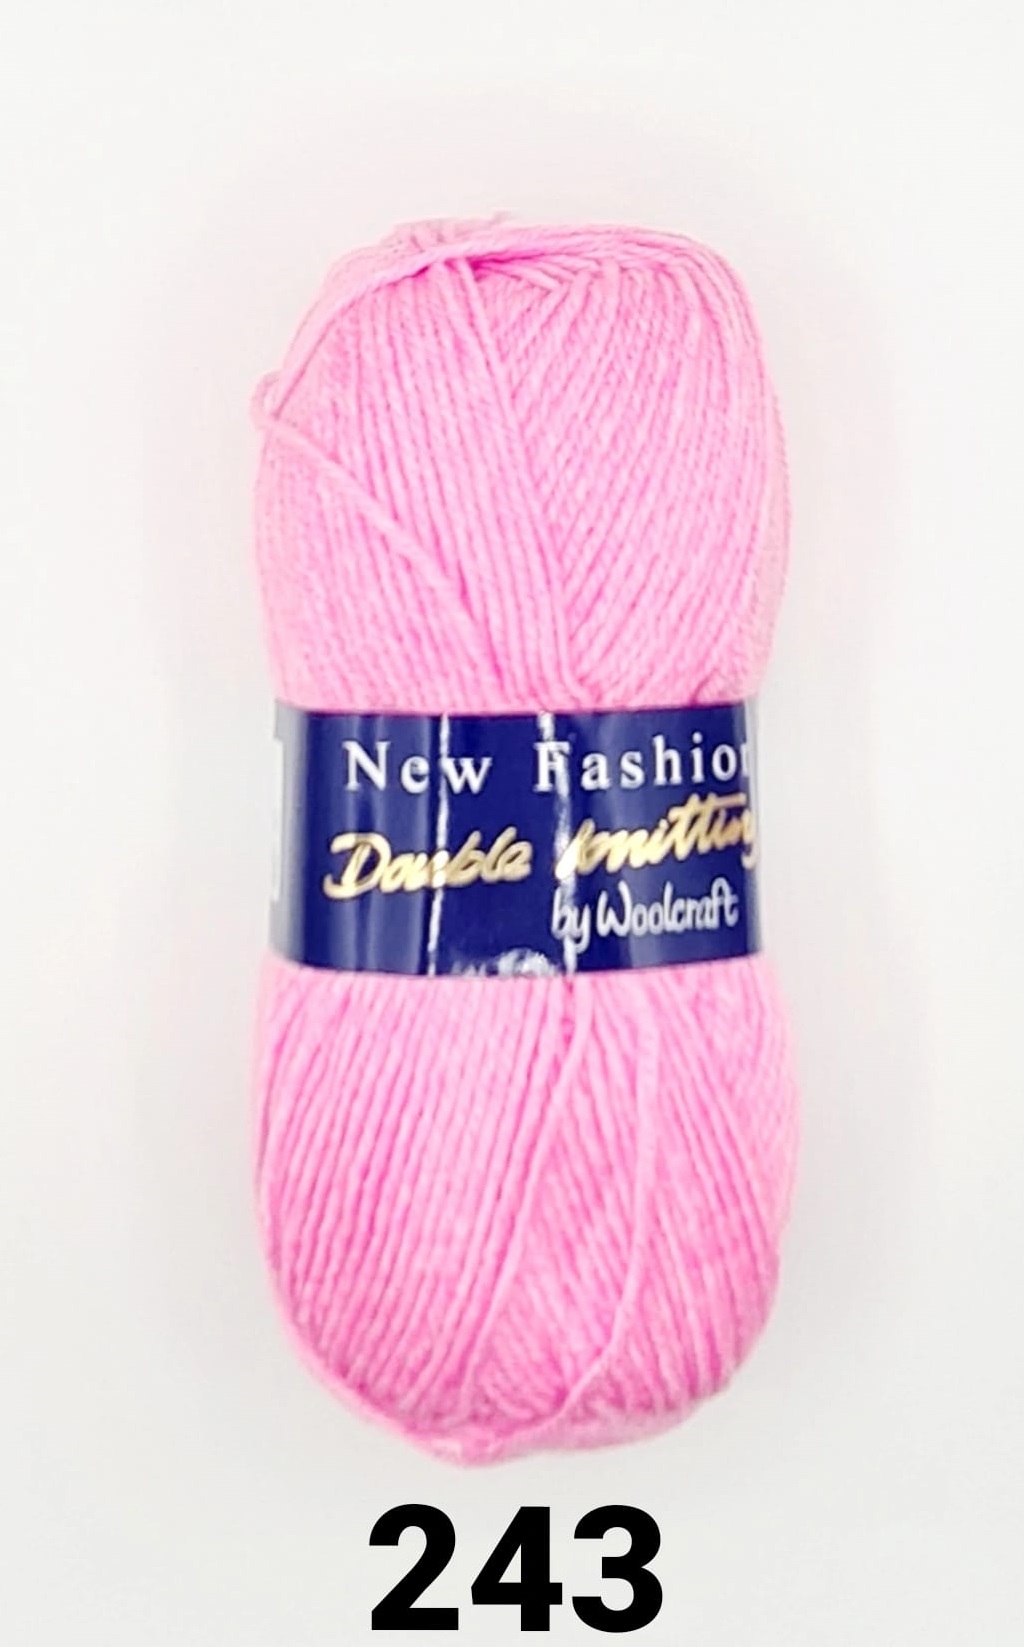 New Fashion DK Yarn 10 Pack Candy Mist 243